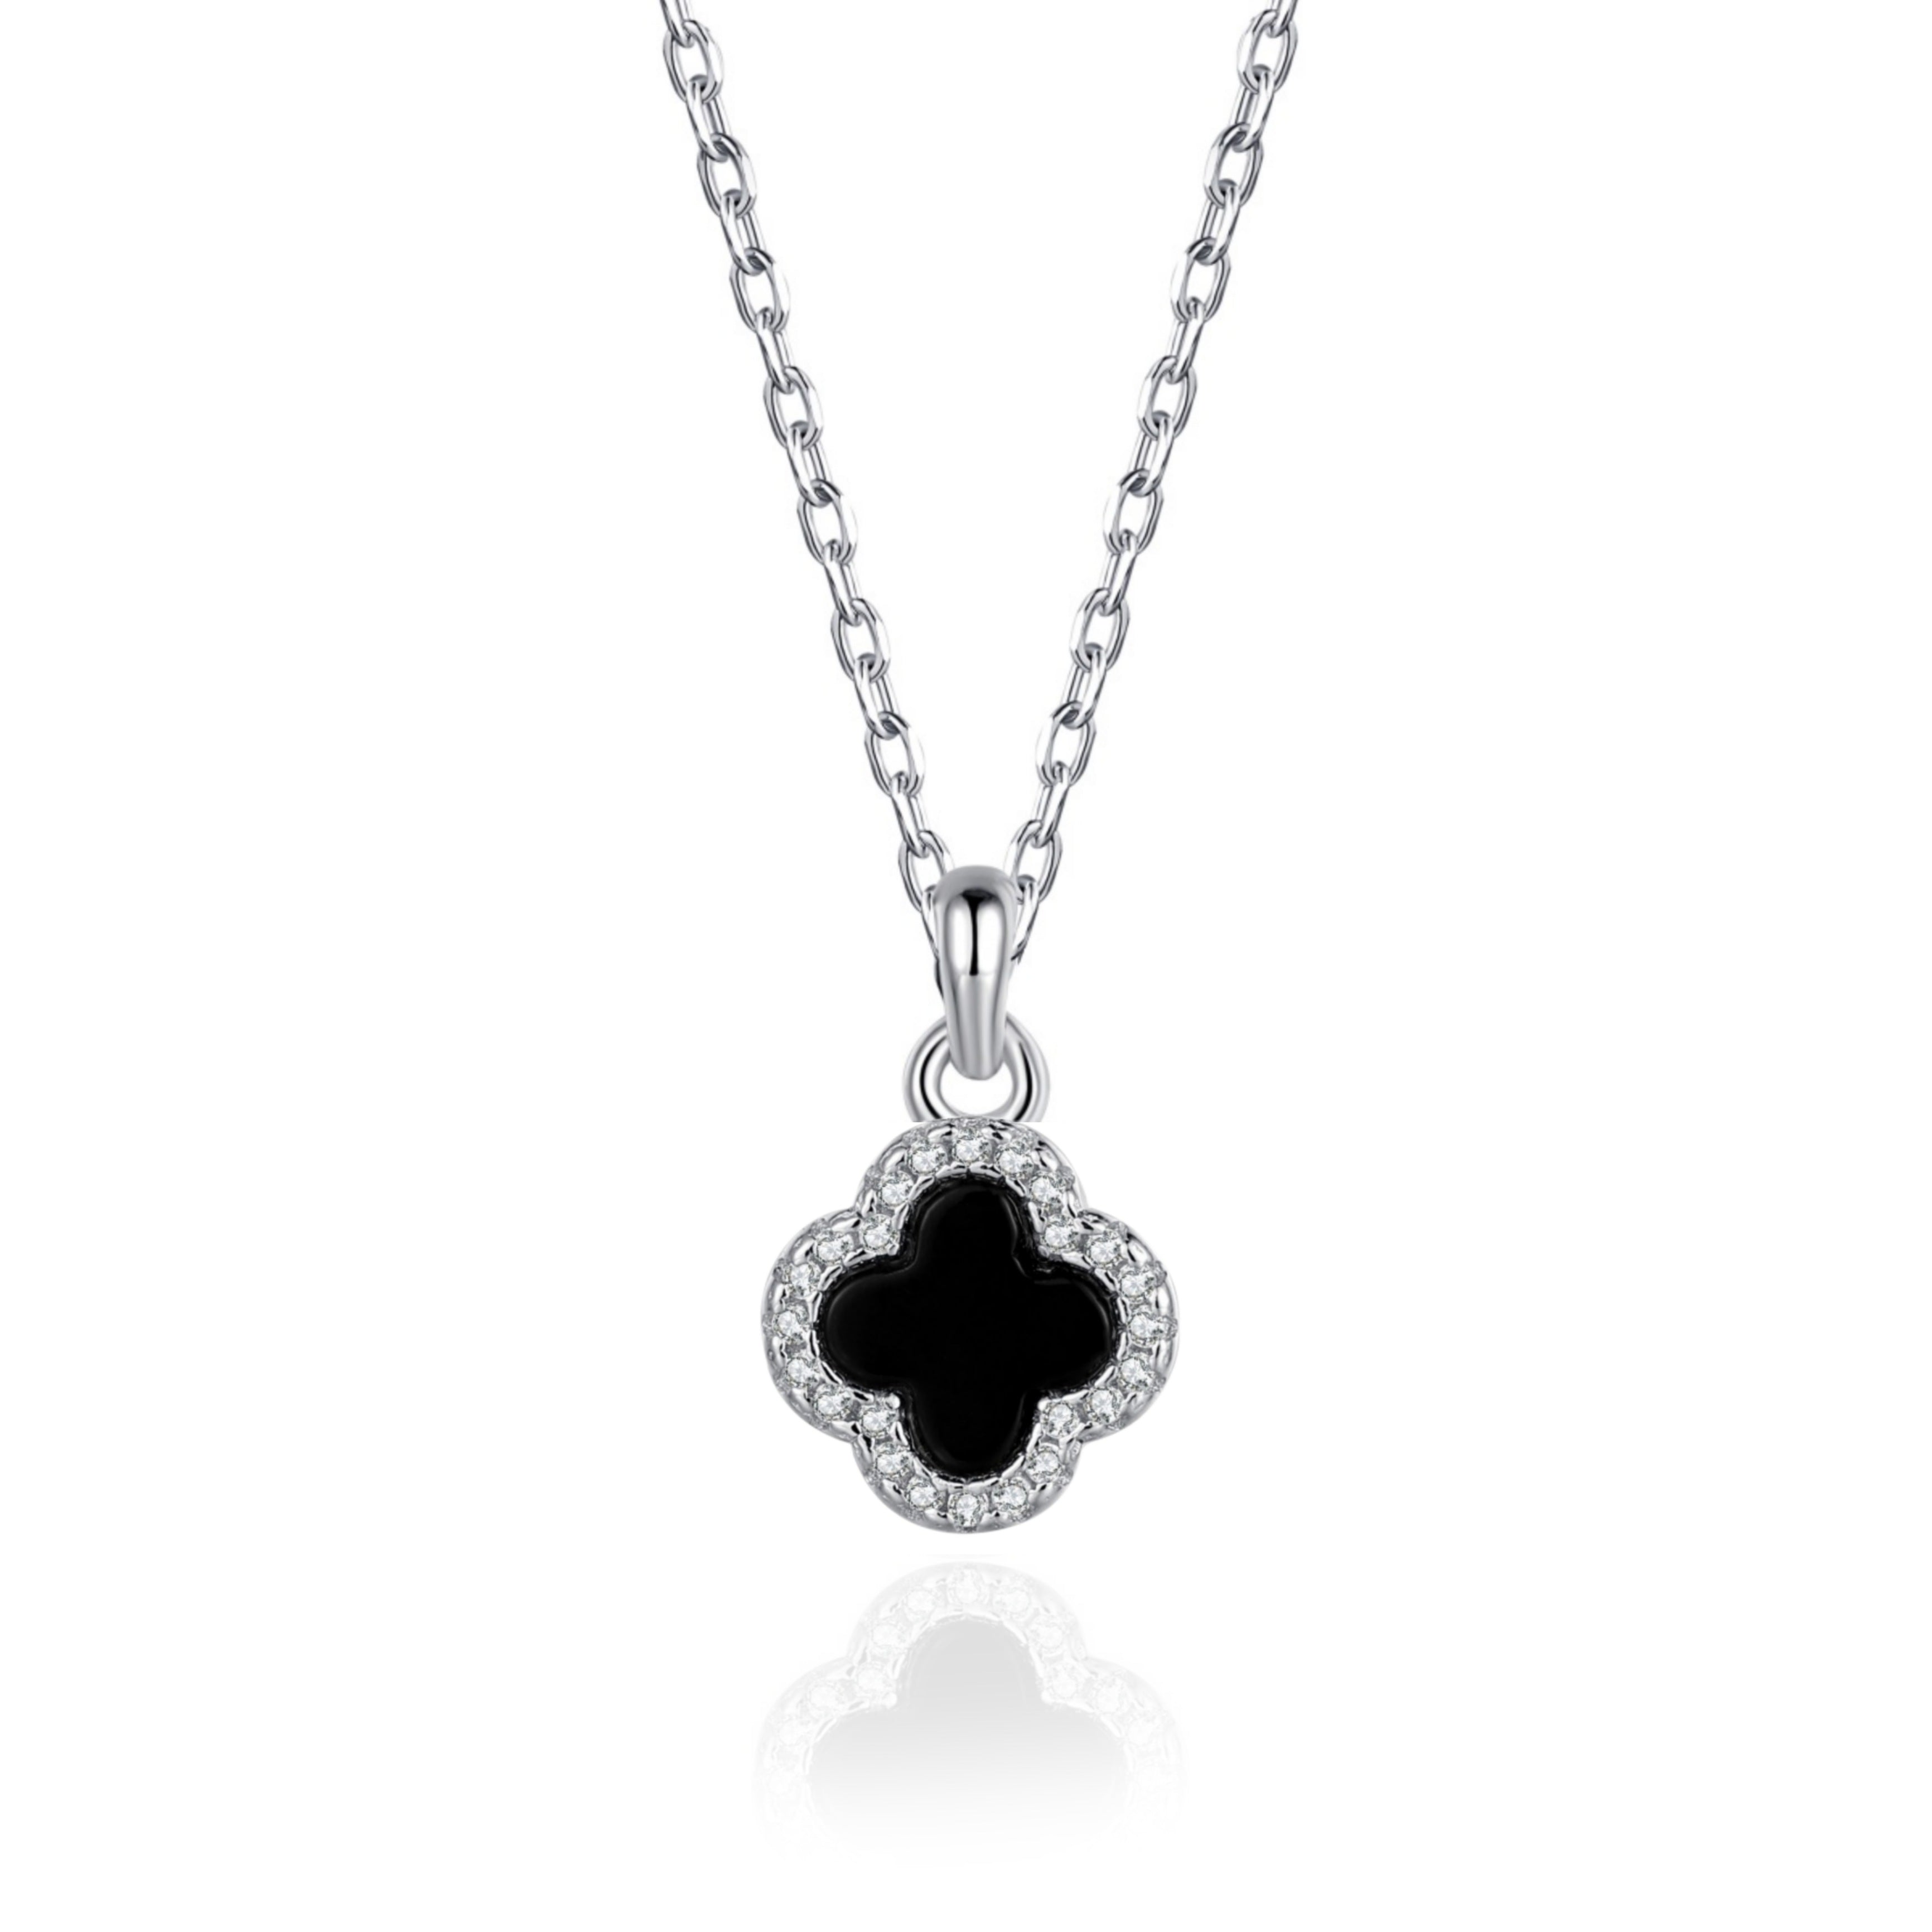 Black Onyx Clover Necklace, Gold Black Onyx Necklace, Gemstone Clover  Necklace, Black Clover Pendant, Black Onyx Jewelry, Jewelry Gift Her - Etsy